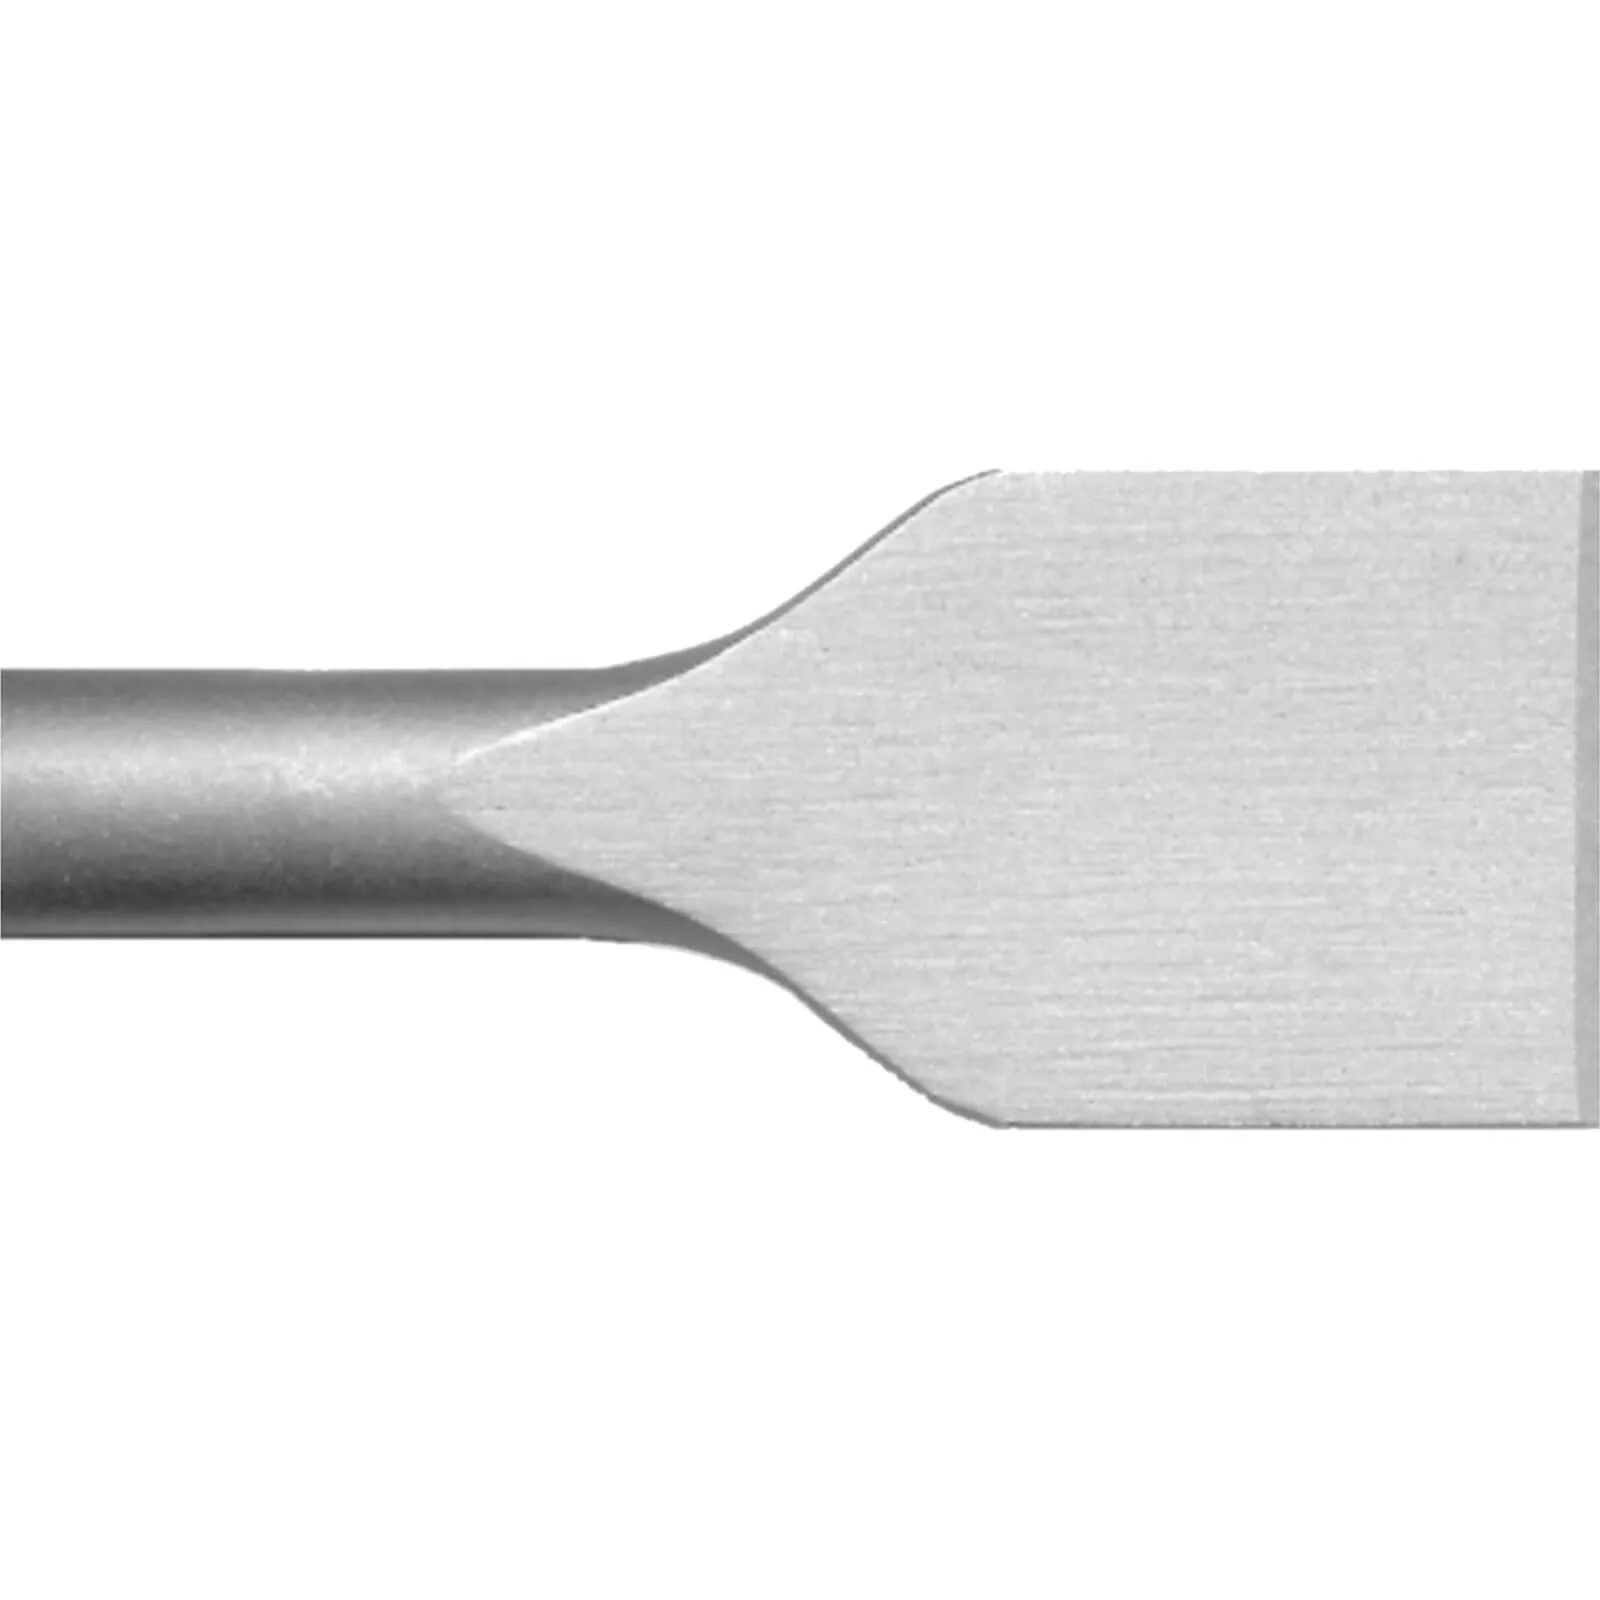 Irwin Speedhammer SDS Plus Spade Chisel Bit - 40mm, 250mm